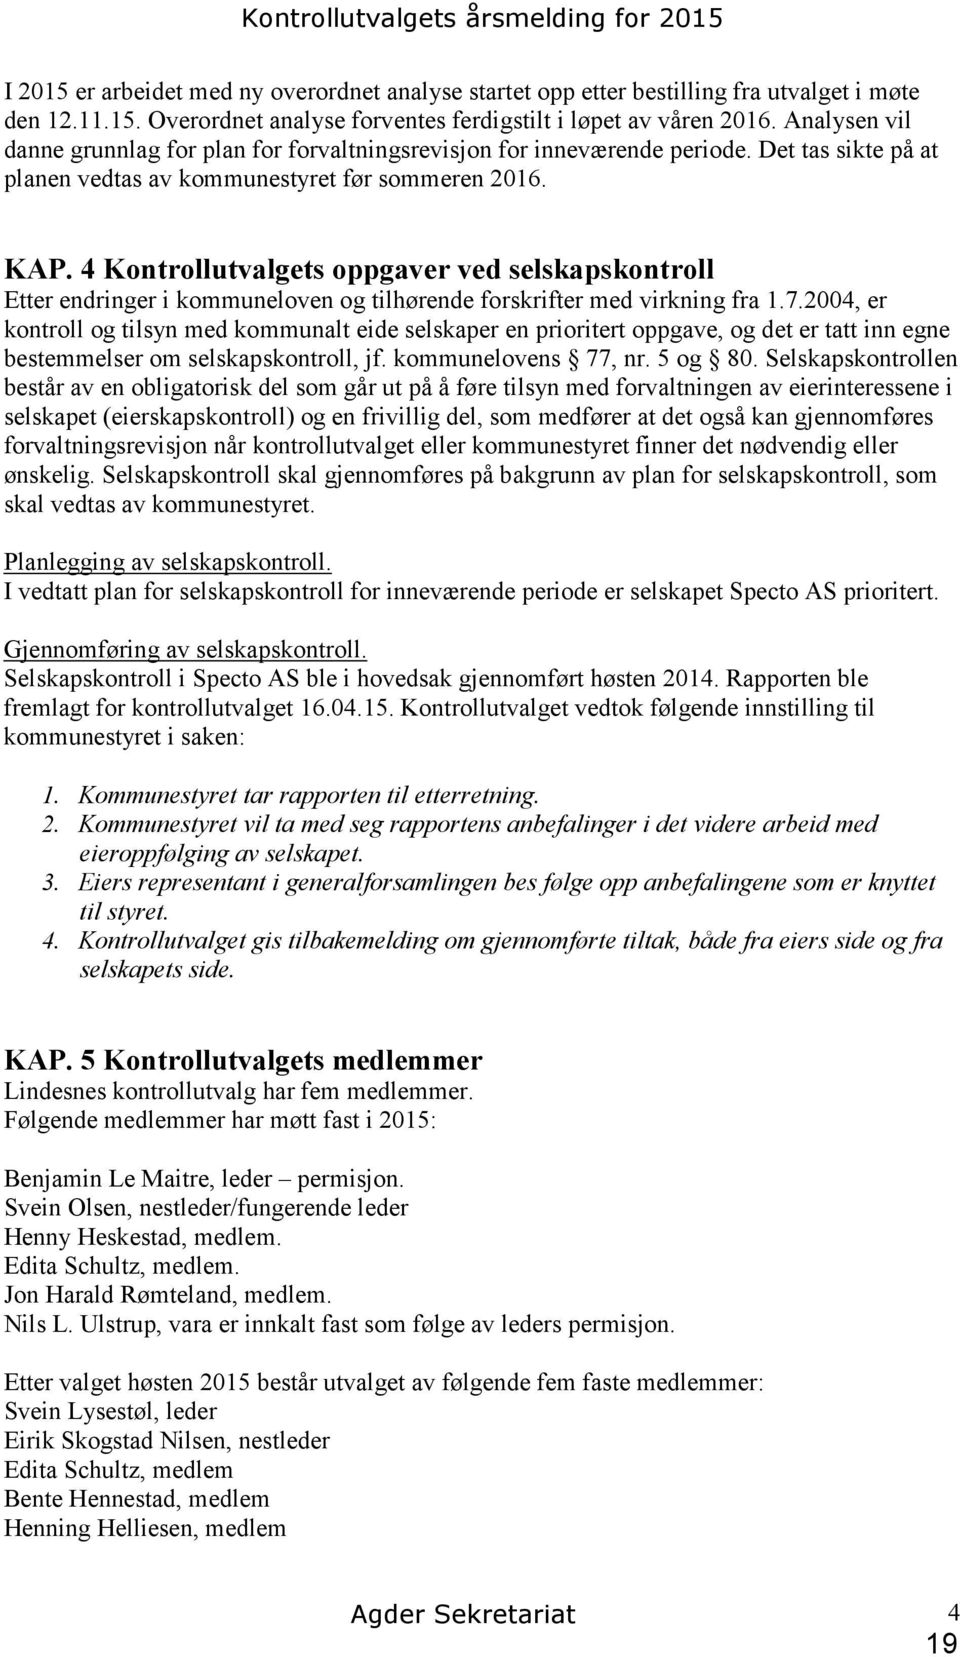 4 Kontrollutvalgets oppgaver ved selskapskontroll Etter endringer i kommuneloven og tilhørende forskrifter med virkning fra 1.7.